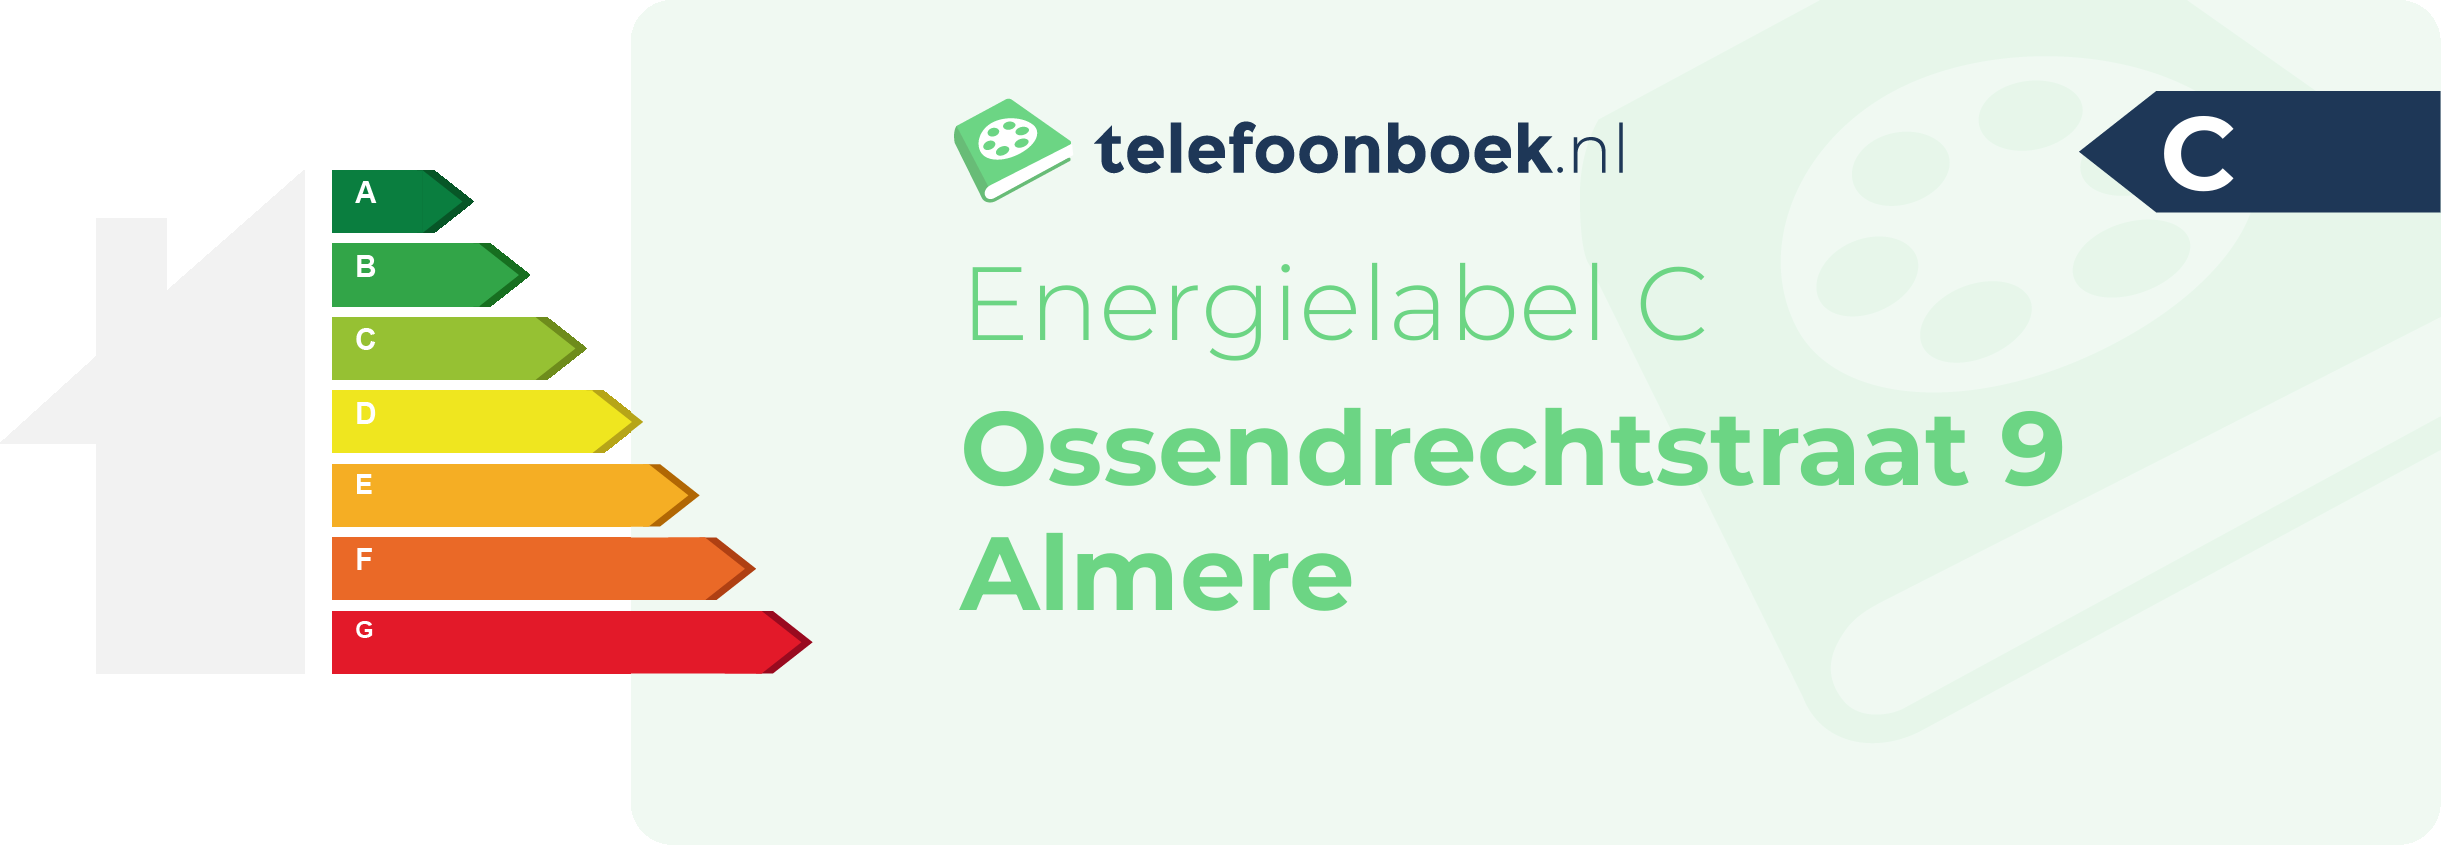 Energielabel Ossendrechtstraat 9 Almere